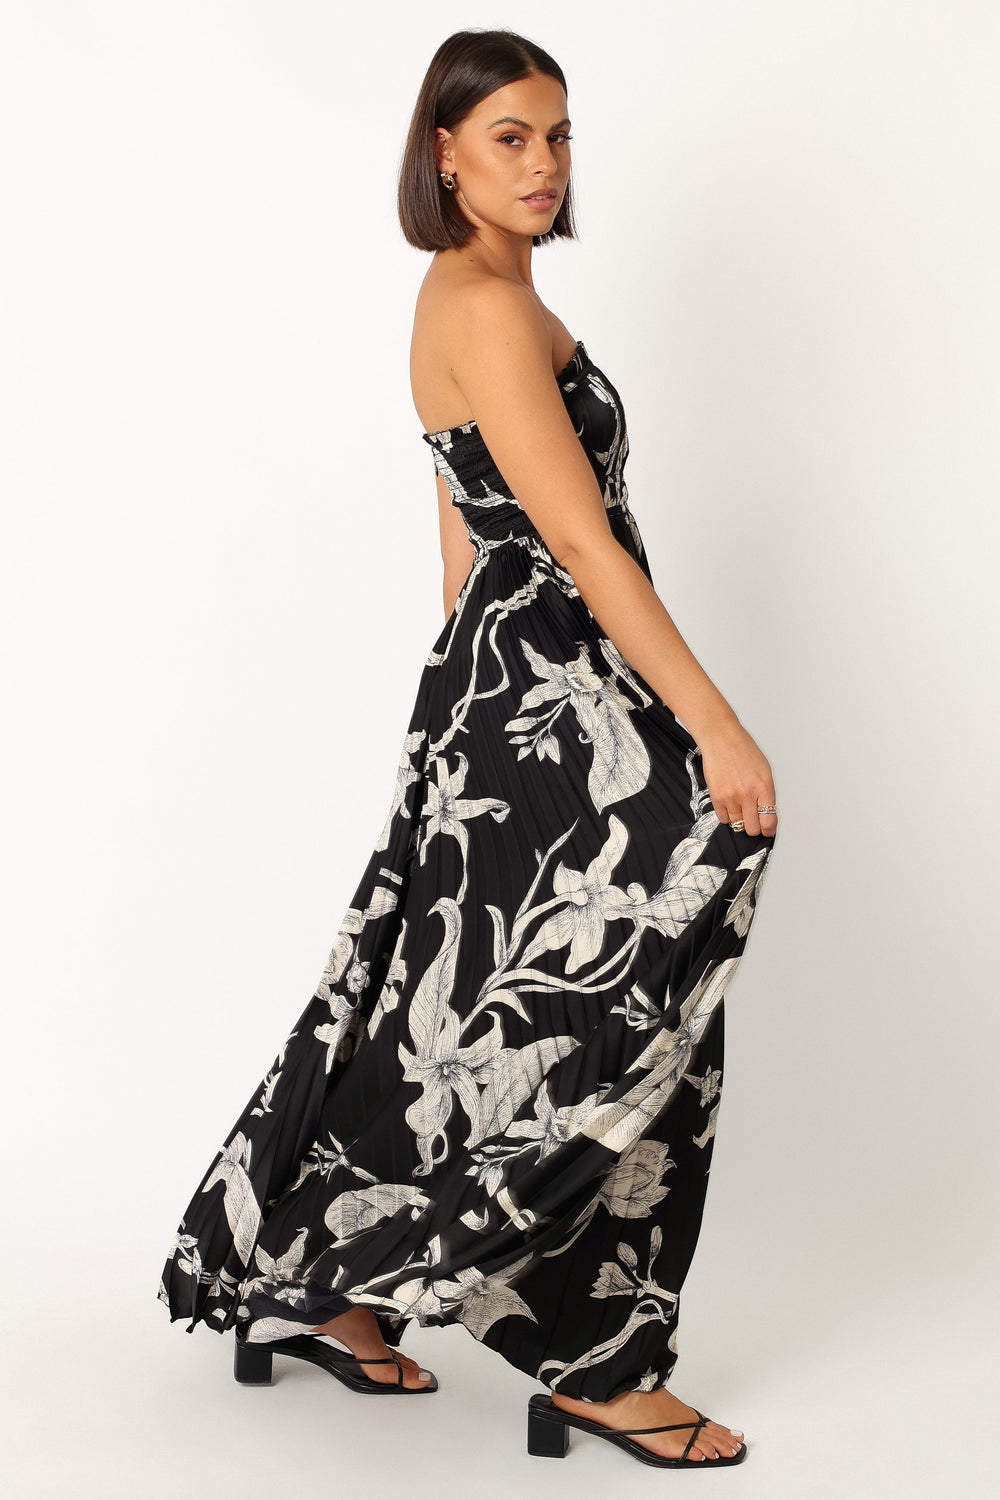 DRESSES @Angelique Strapless Maxi Dress - Black Floral